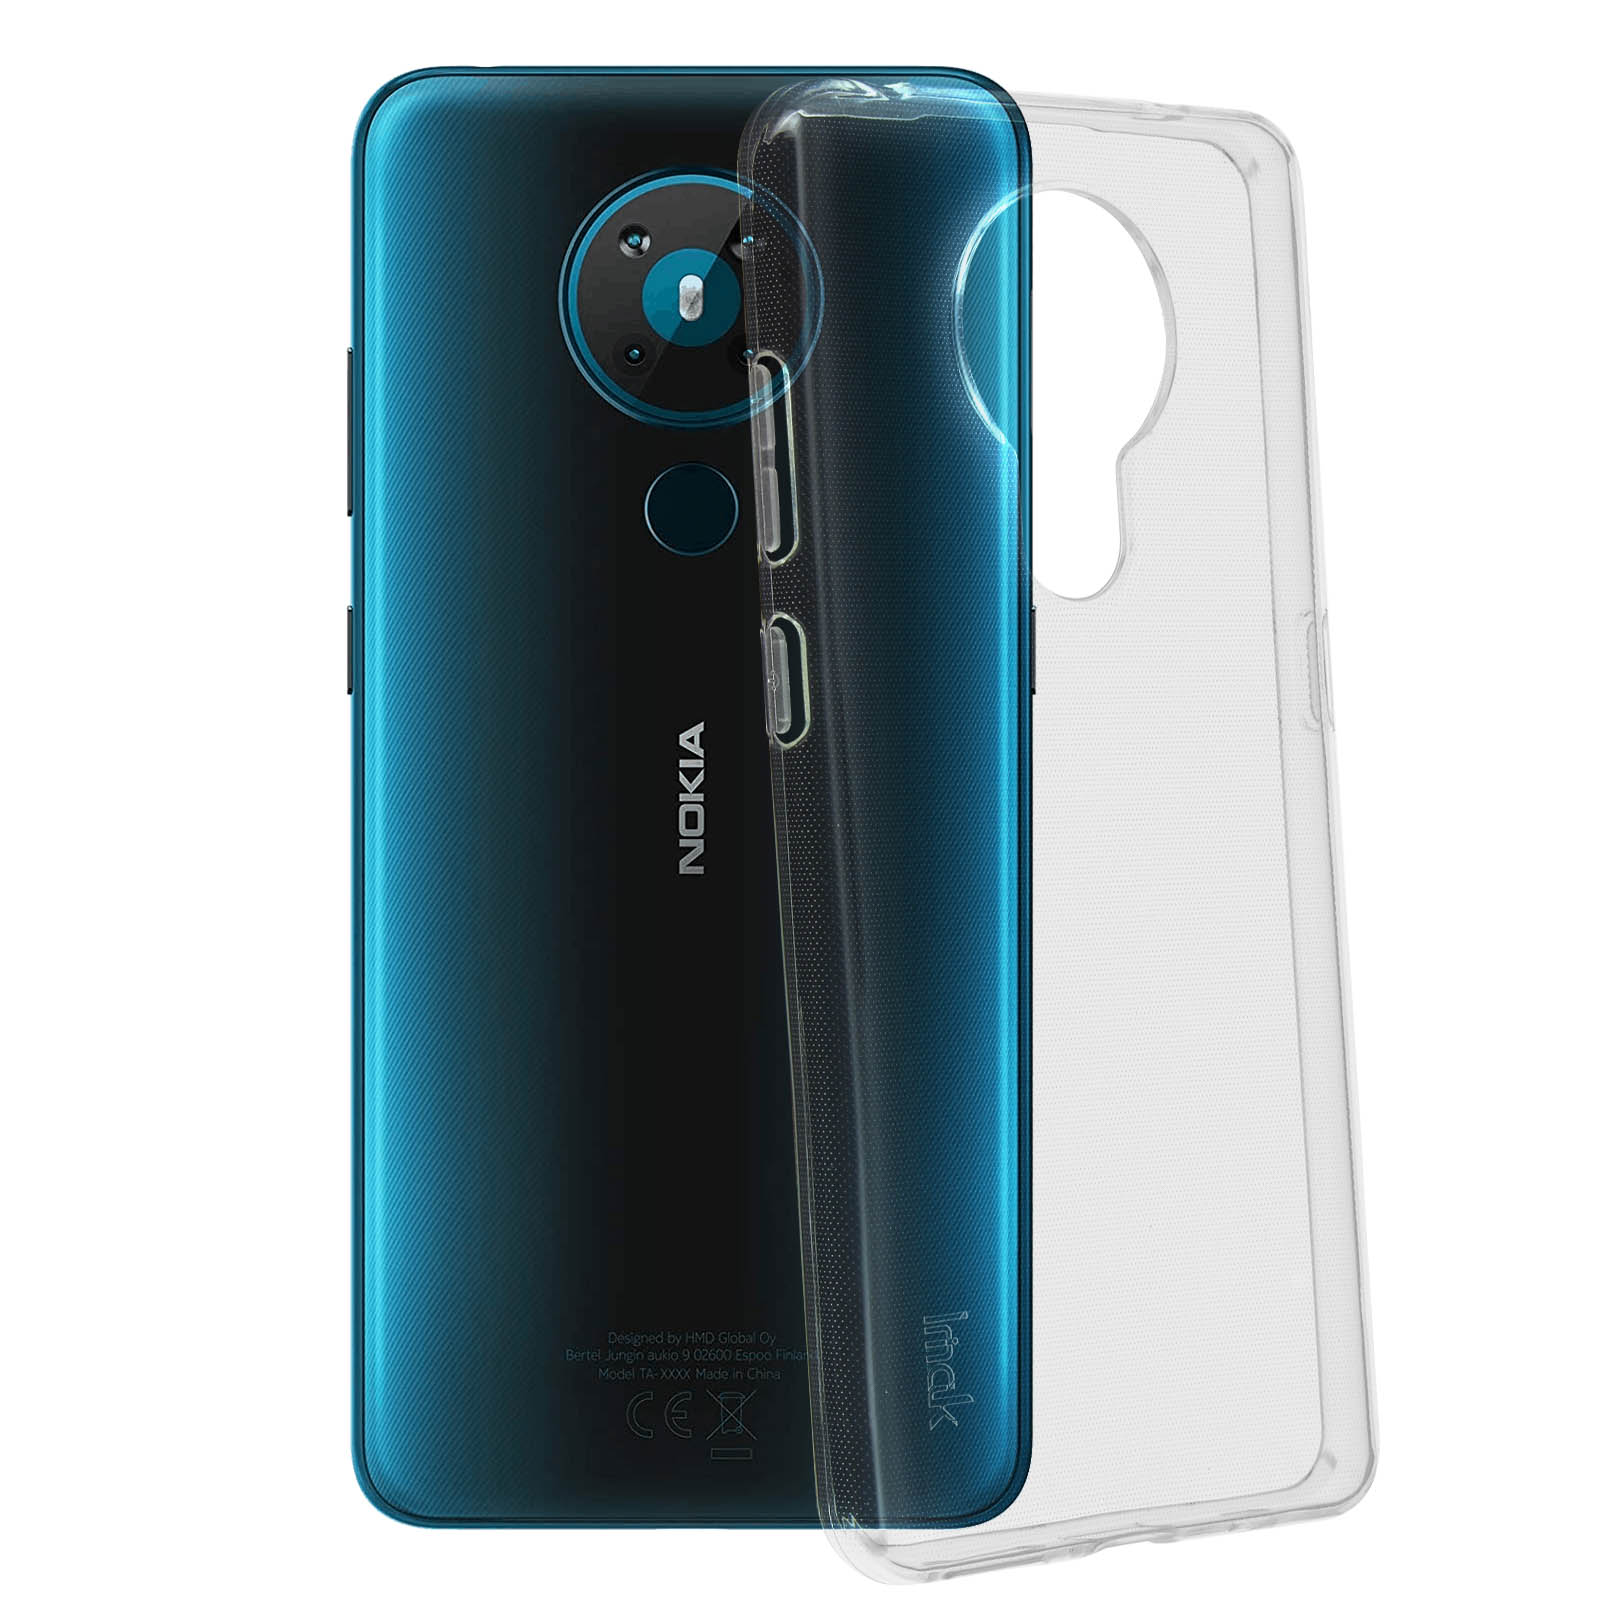 IMAK Backcover Series, Backcover, Transparent Nokia, Nokia 5.3